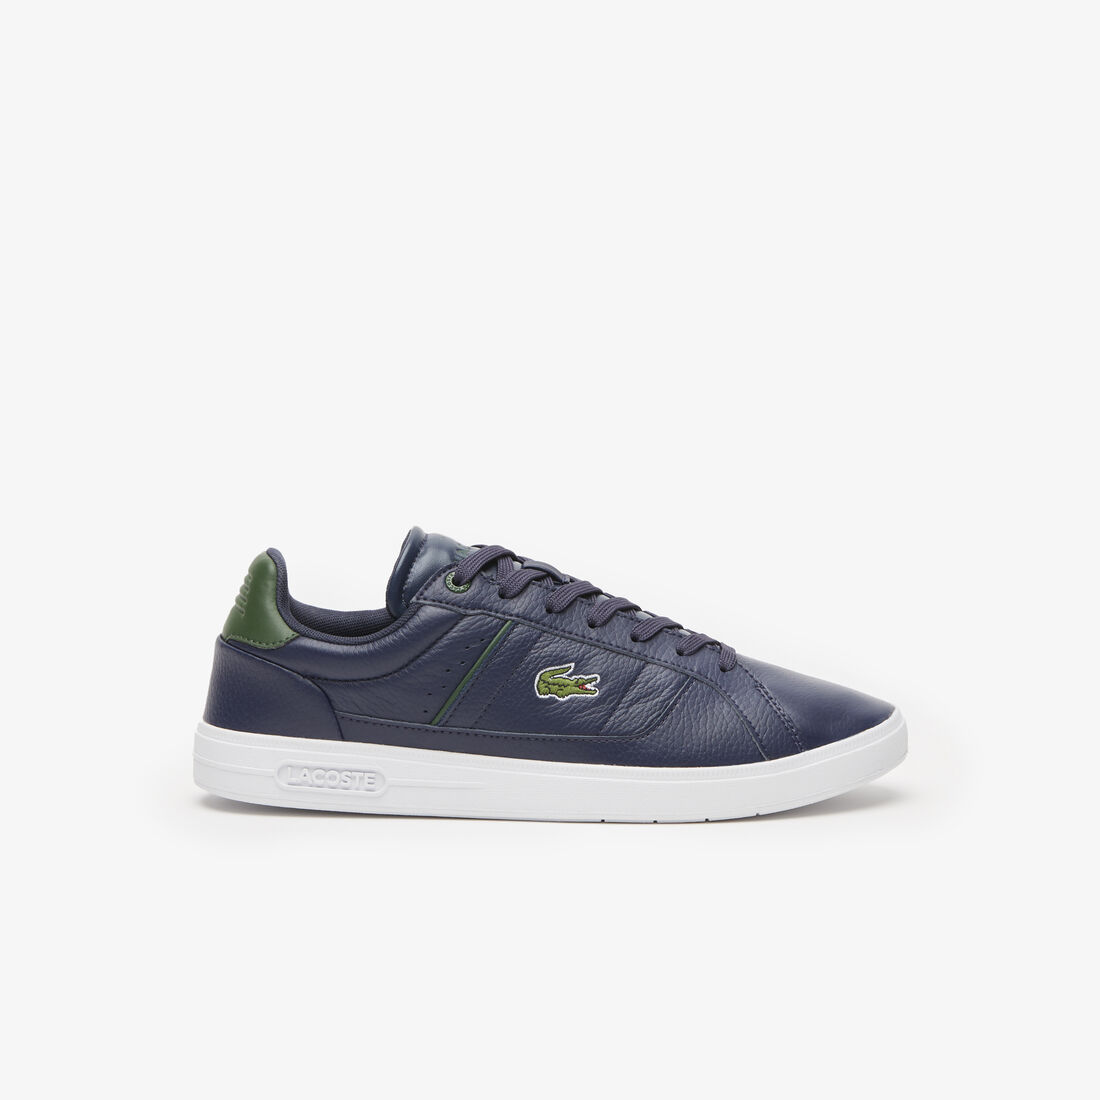 Lacoste Europa Pro Synthetic Tonal Men's Sneakers Navy / Dark Green | 174-FWVCNJ